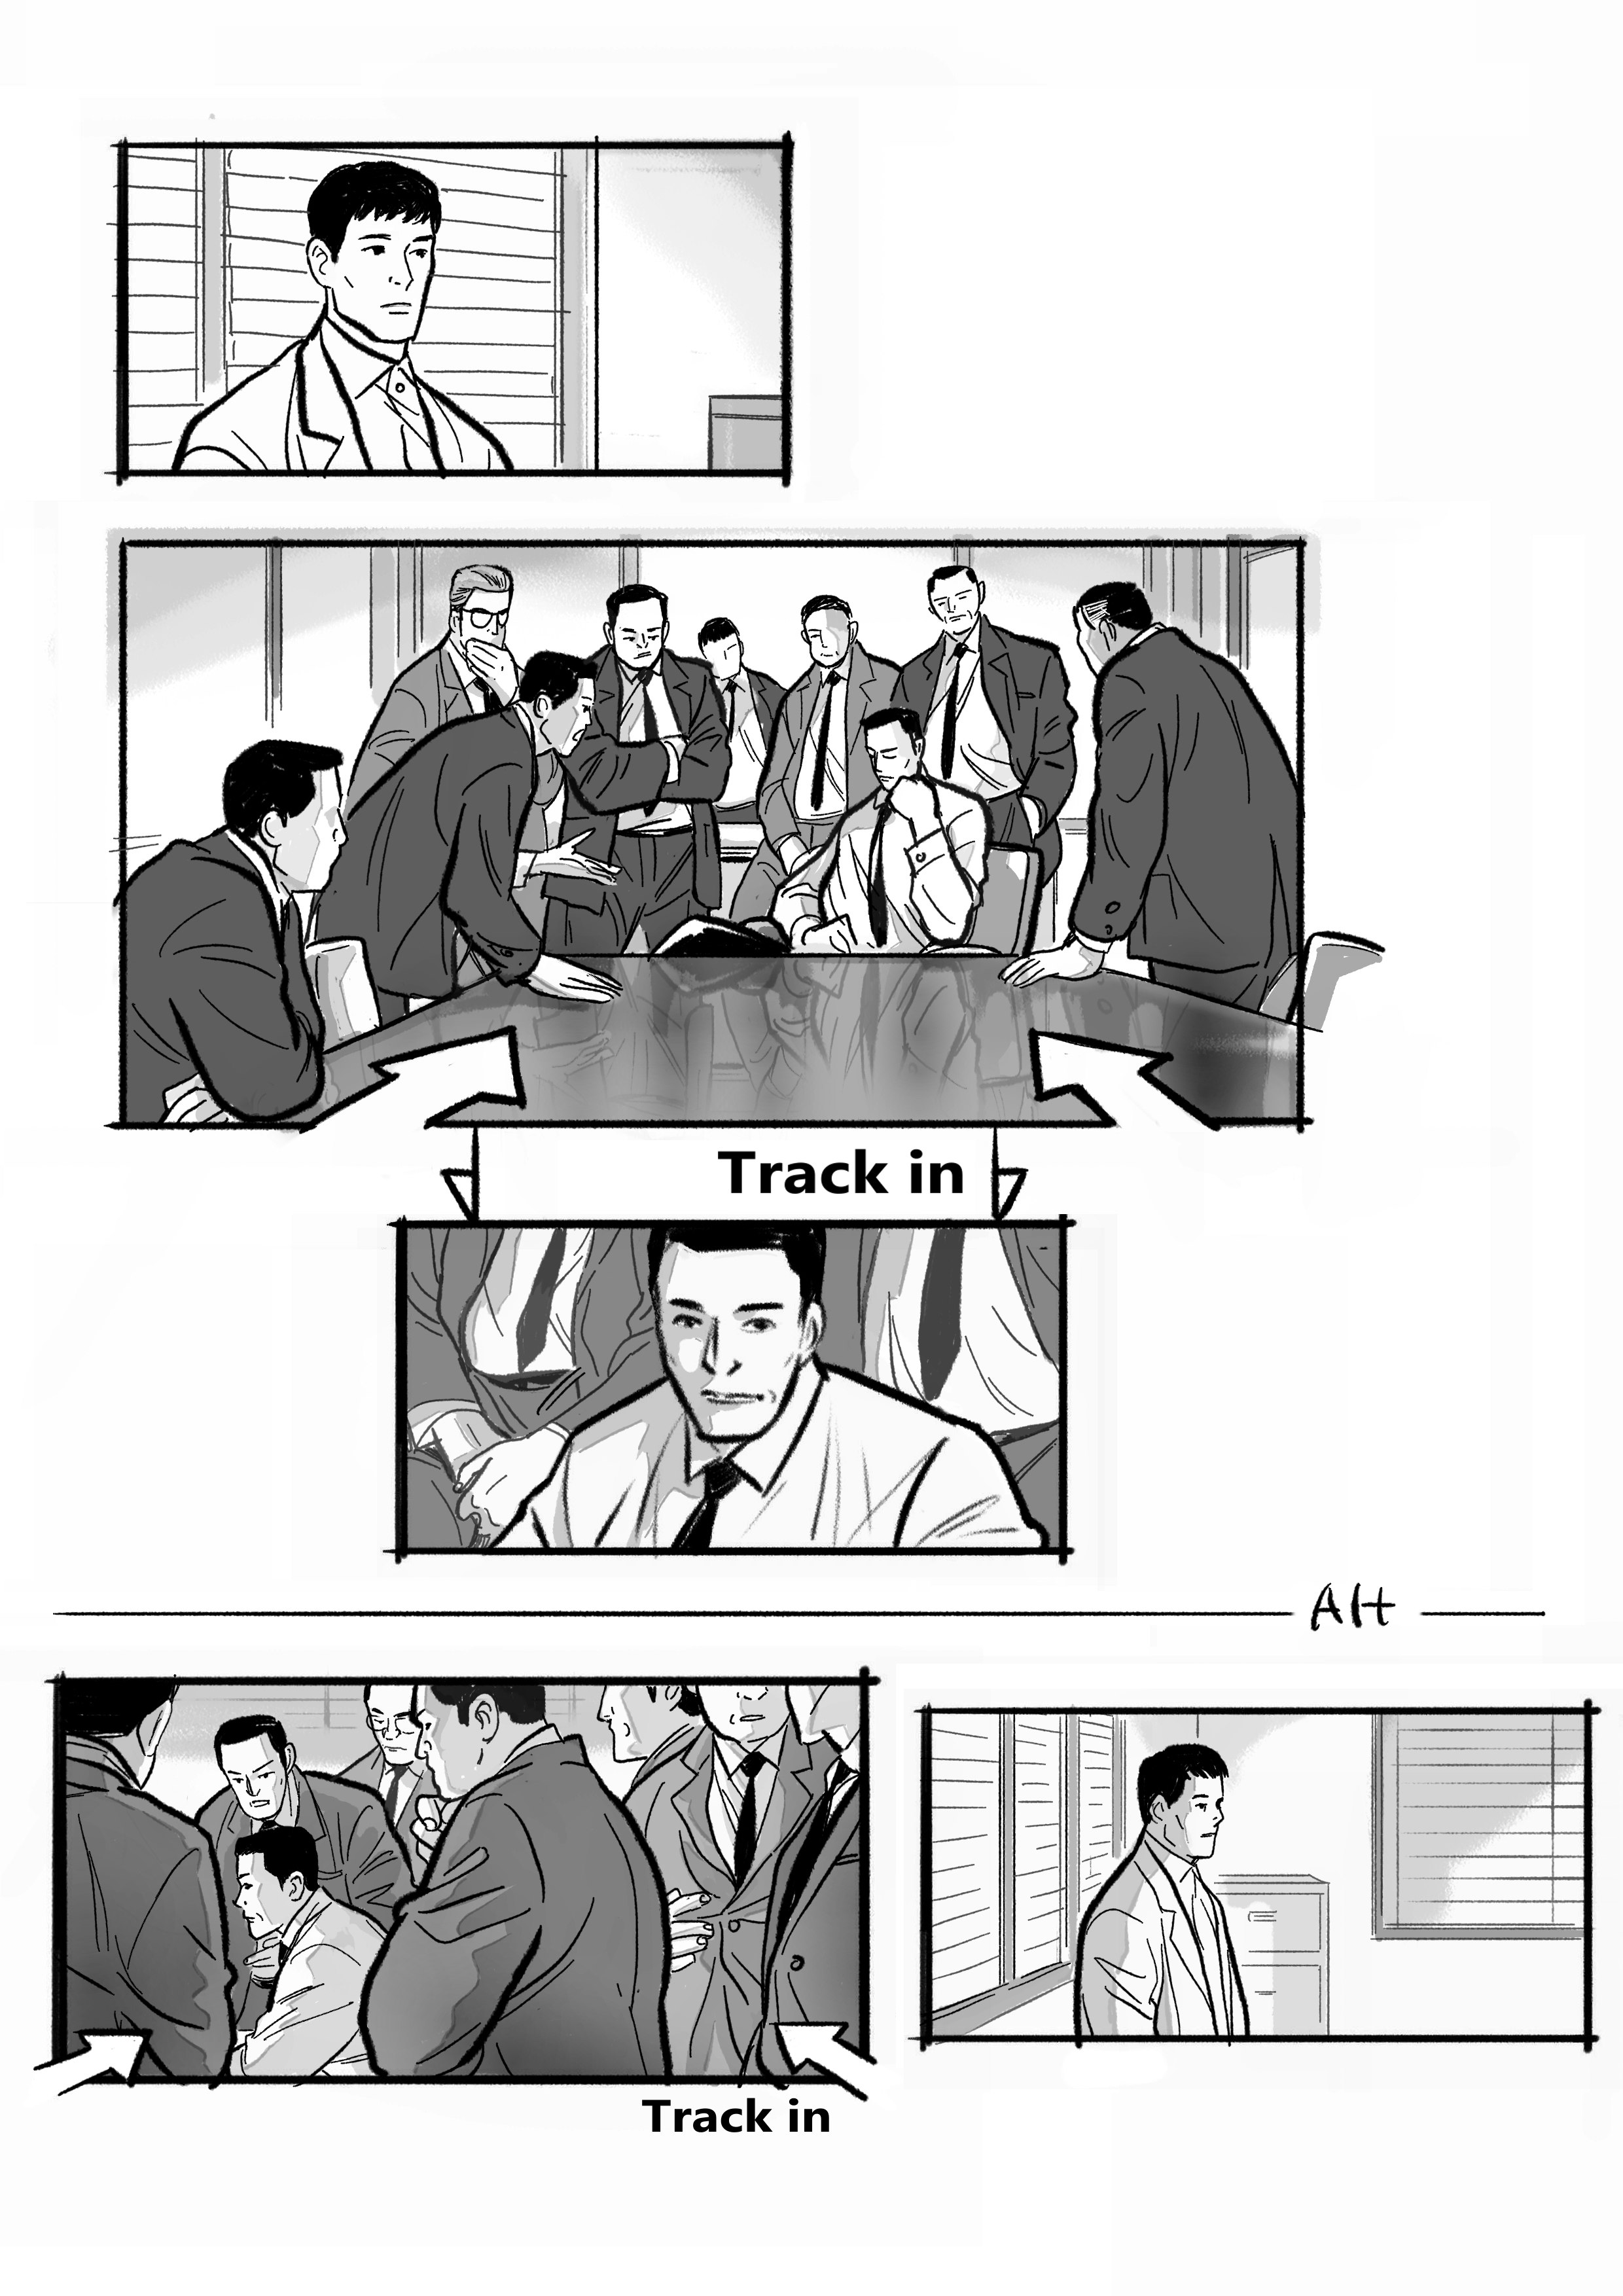 藤本信介さんが参加した「キングメーカー　大統領を作った男」の絵コンテ